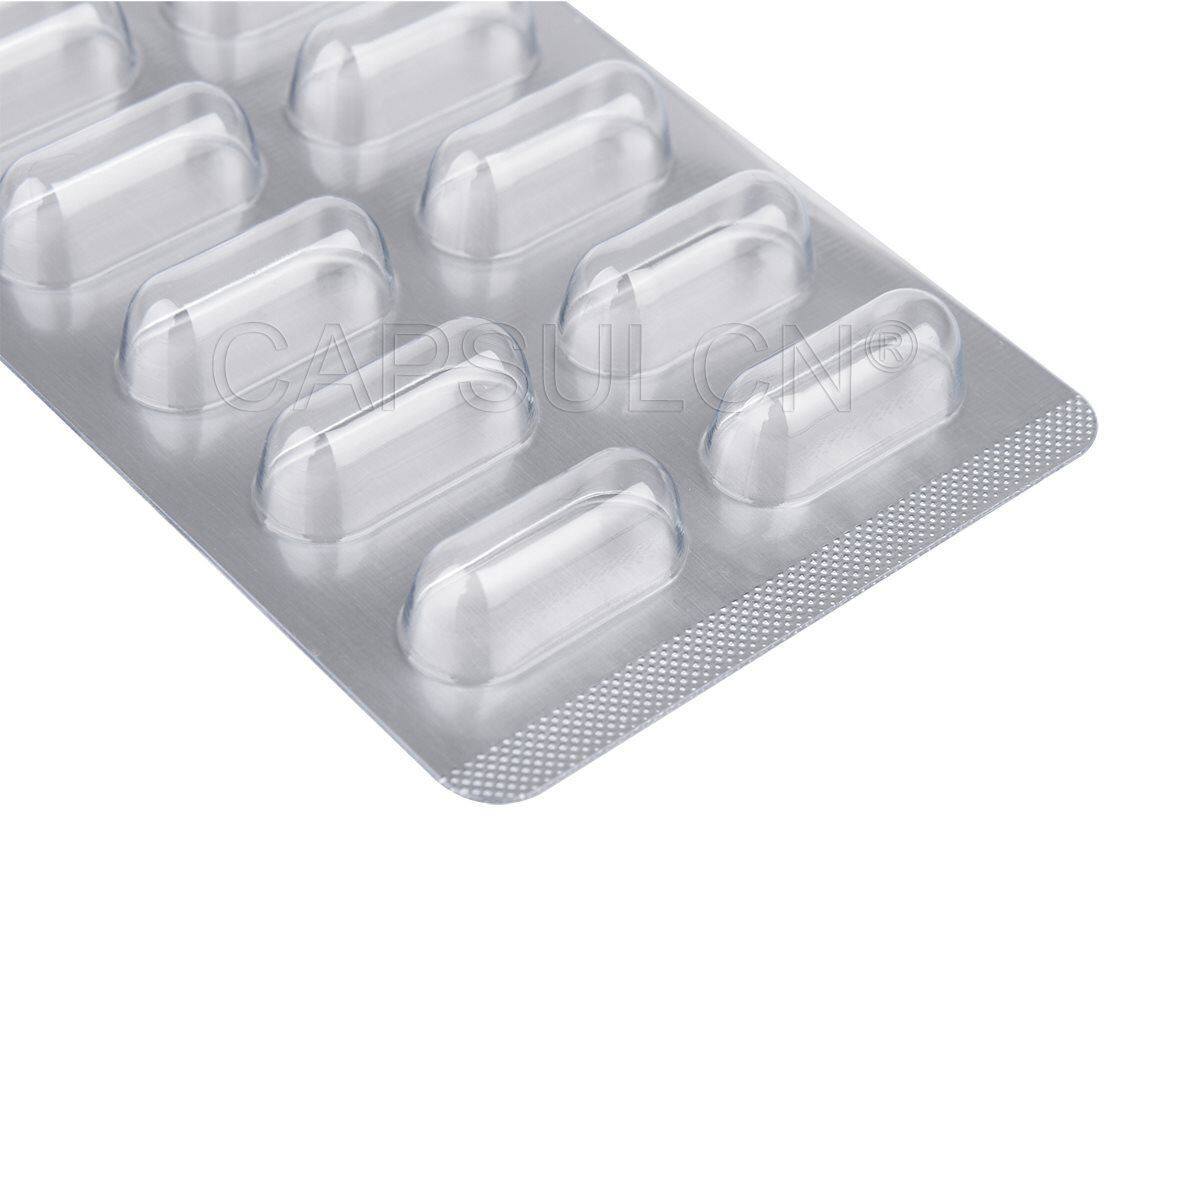 pill blister packaging supplies